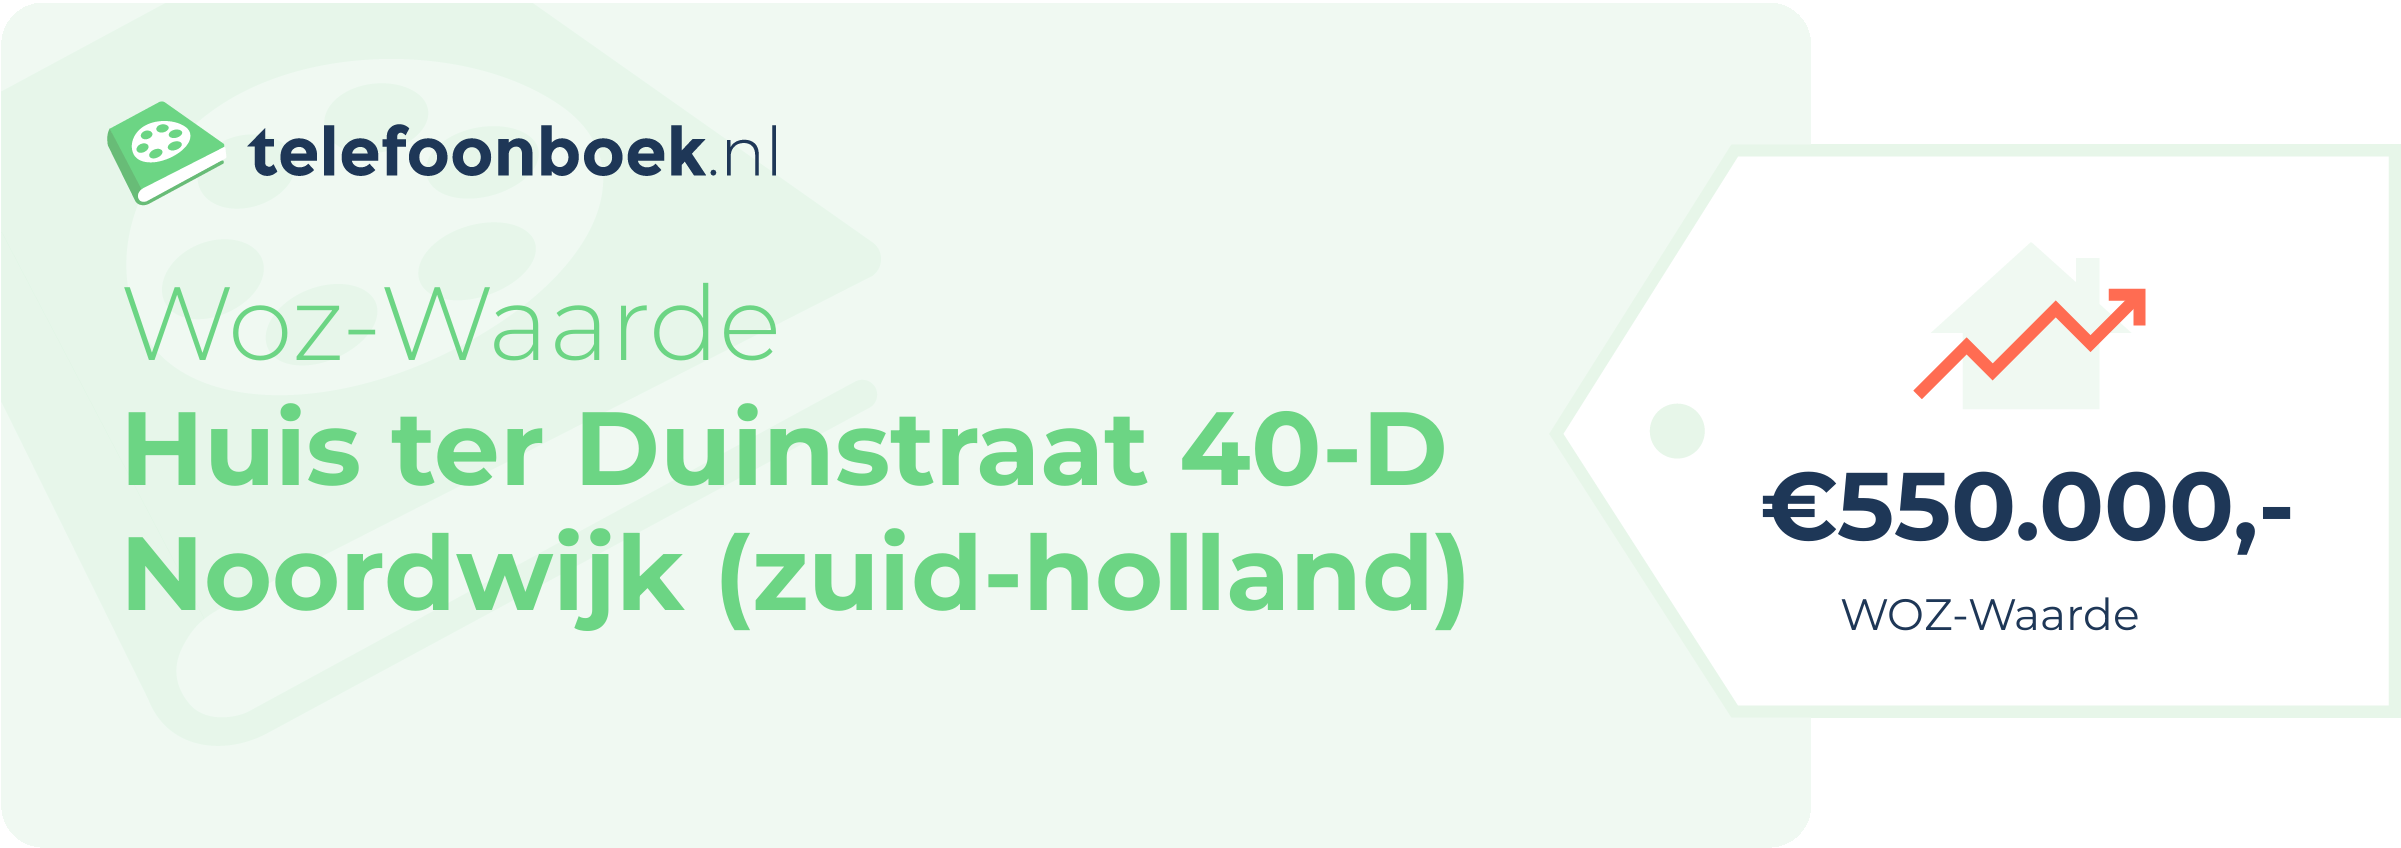 WOZ-waarde Huis Ter Duinstraat 40-D Noordwijk (Zuid-Holland)